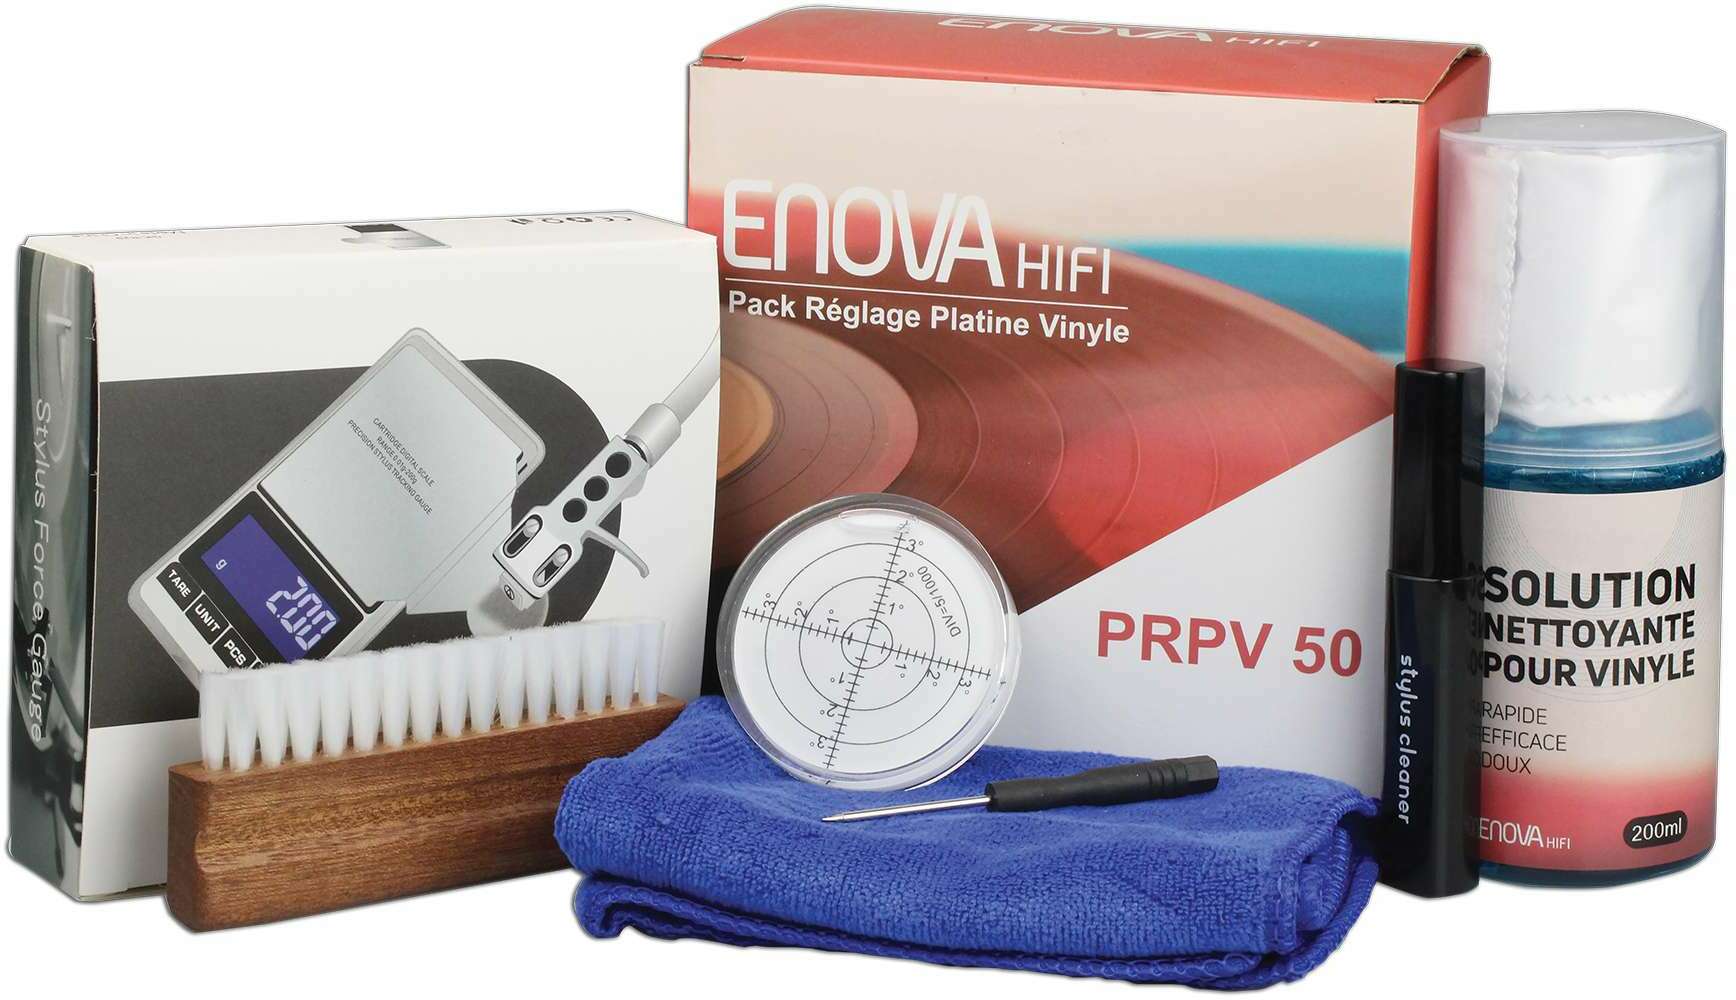 Enova Hifi Pack Reglage Platine Vinyle - Prpv 50 - Kit De Nettoyage Dj - Main picture